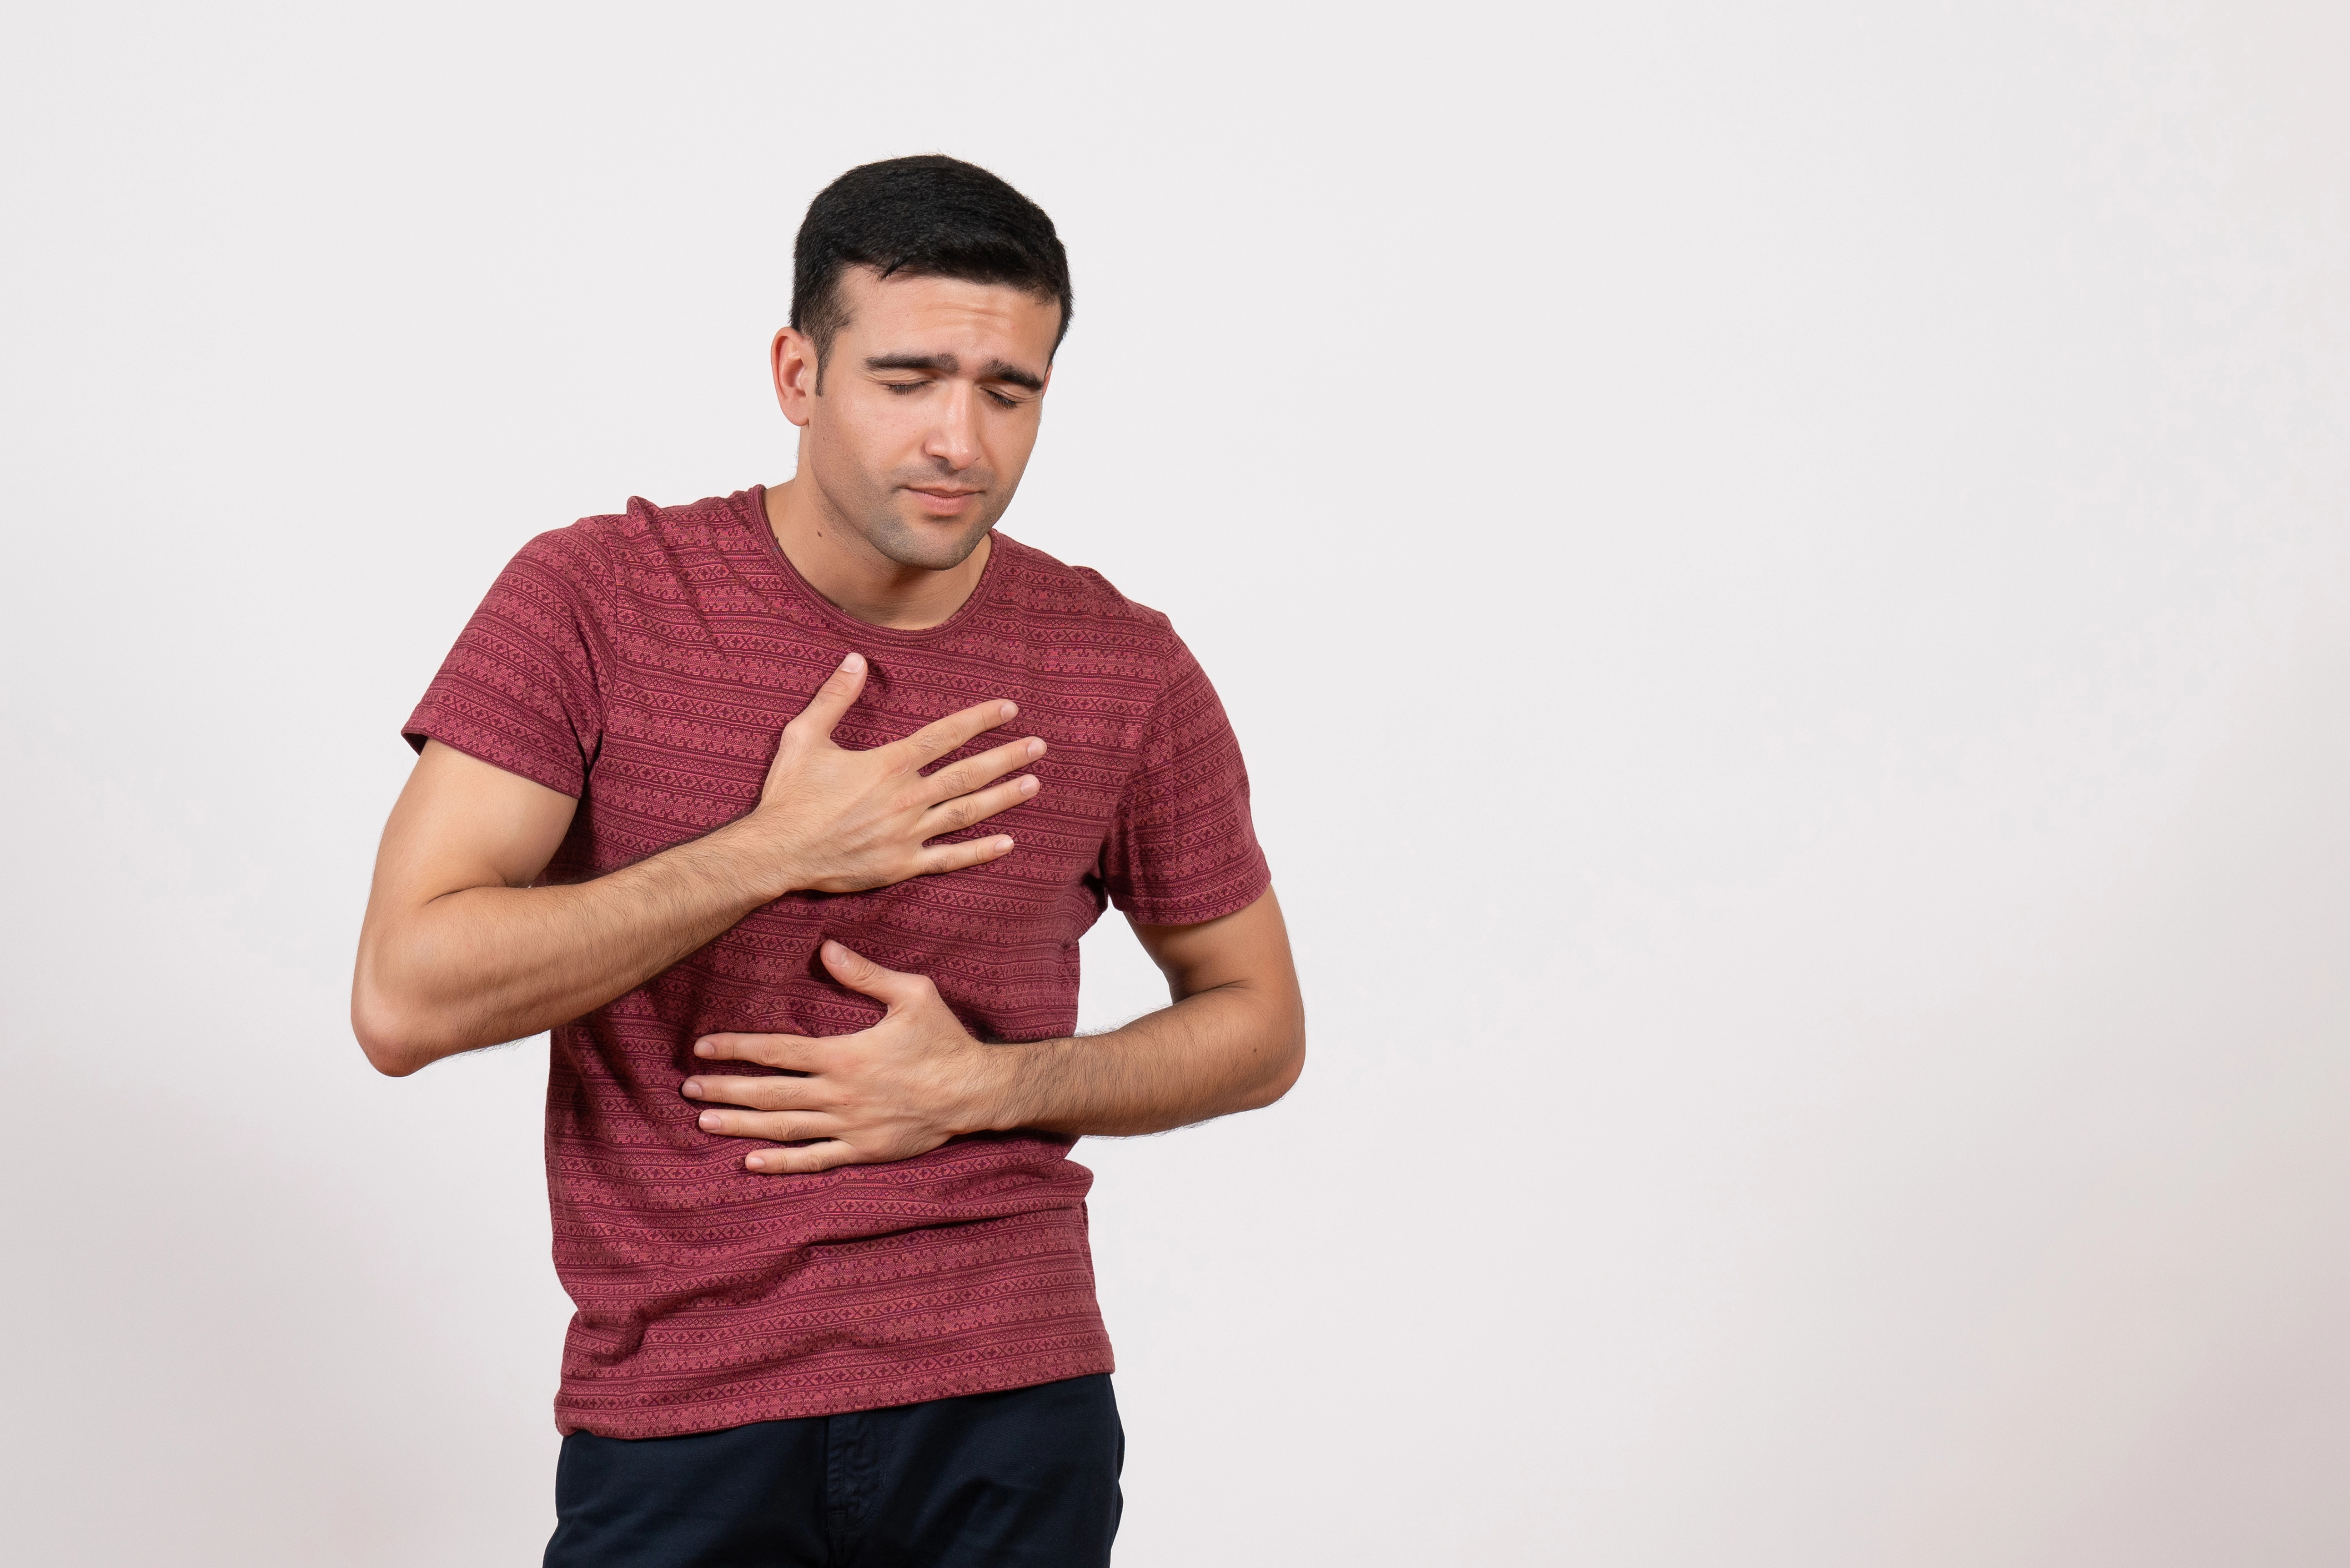 الفرق بين ألم العضلات وألم القلب